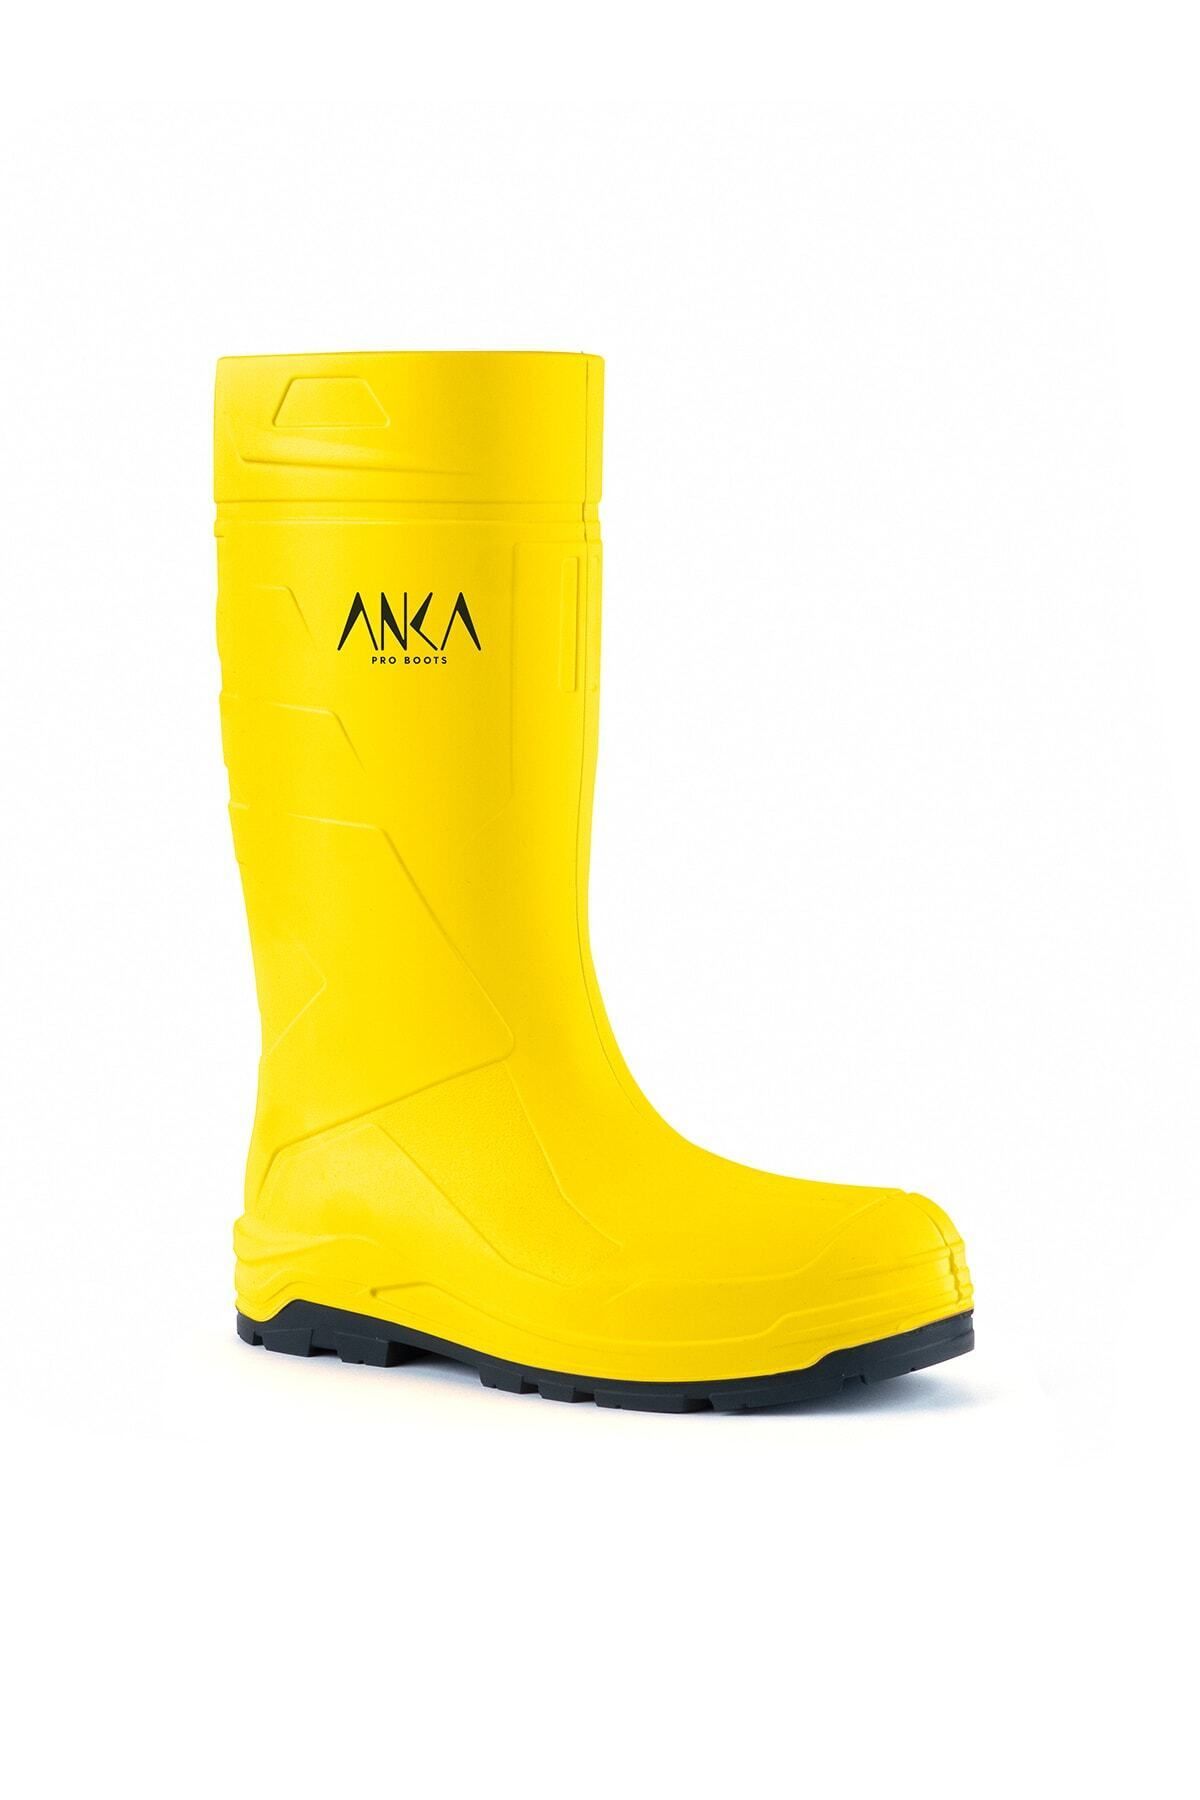 Anka Pro Boots 904 O4